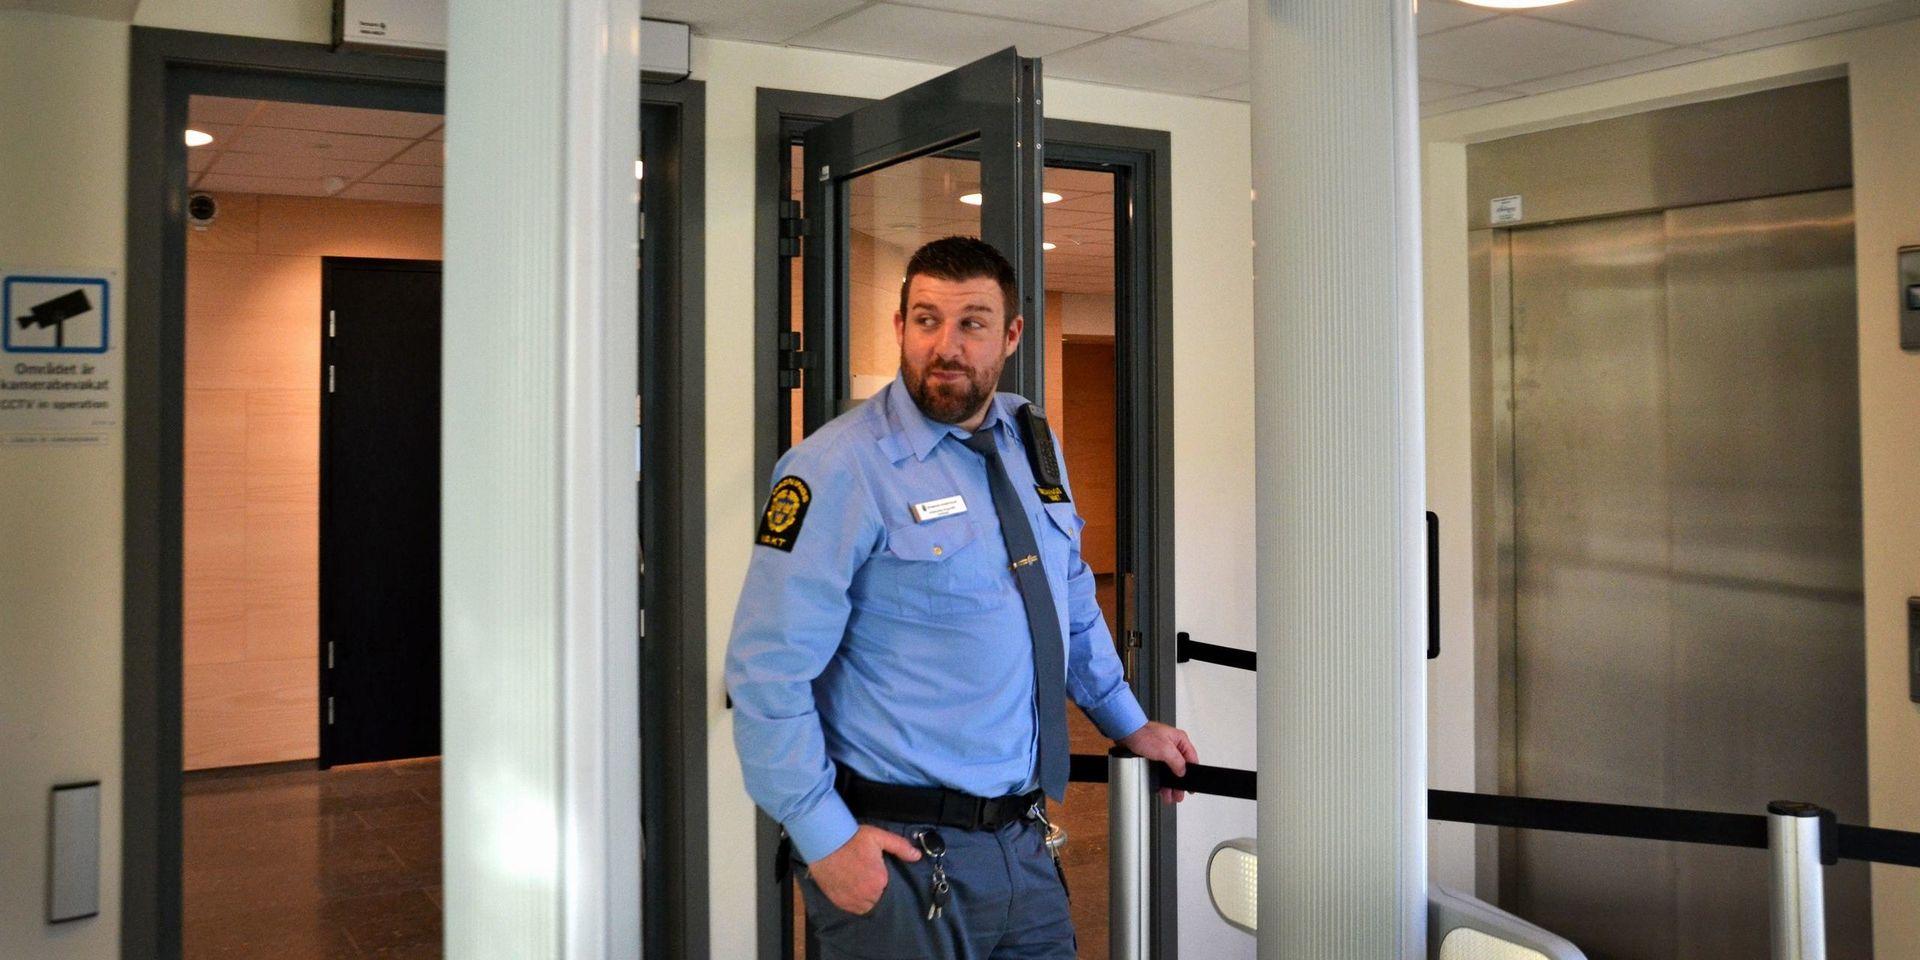 Andreas Strandberg, vakt på Uddevalla tingsrätt, berättar att det inte är ovanligt att man stöter på farliga föremål i säkerhetskontrollen.